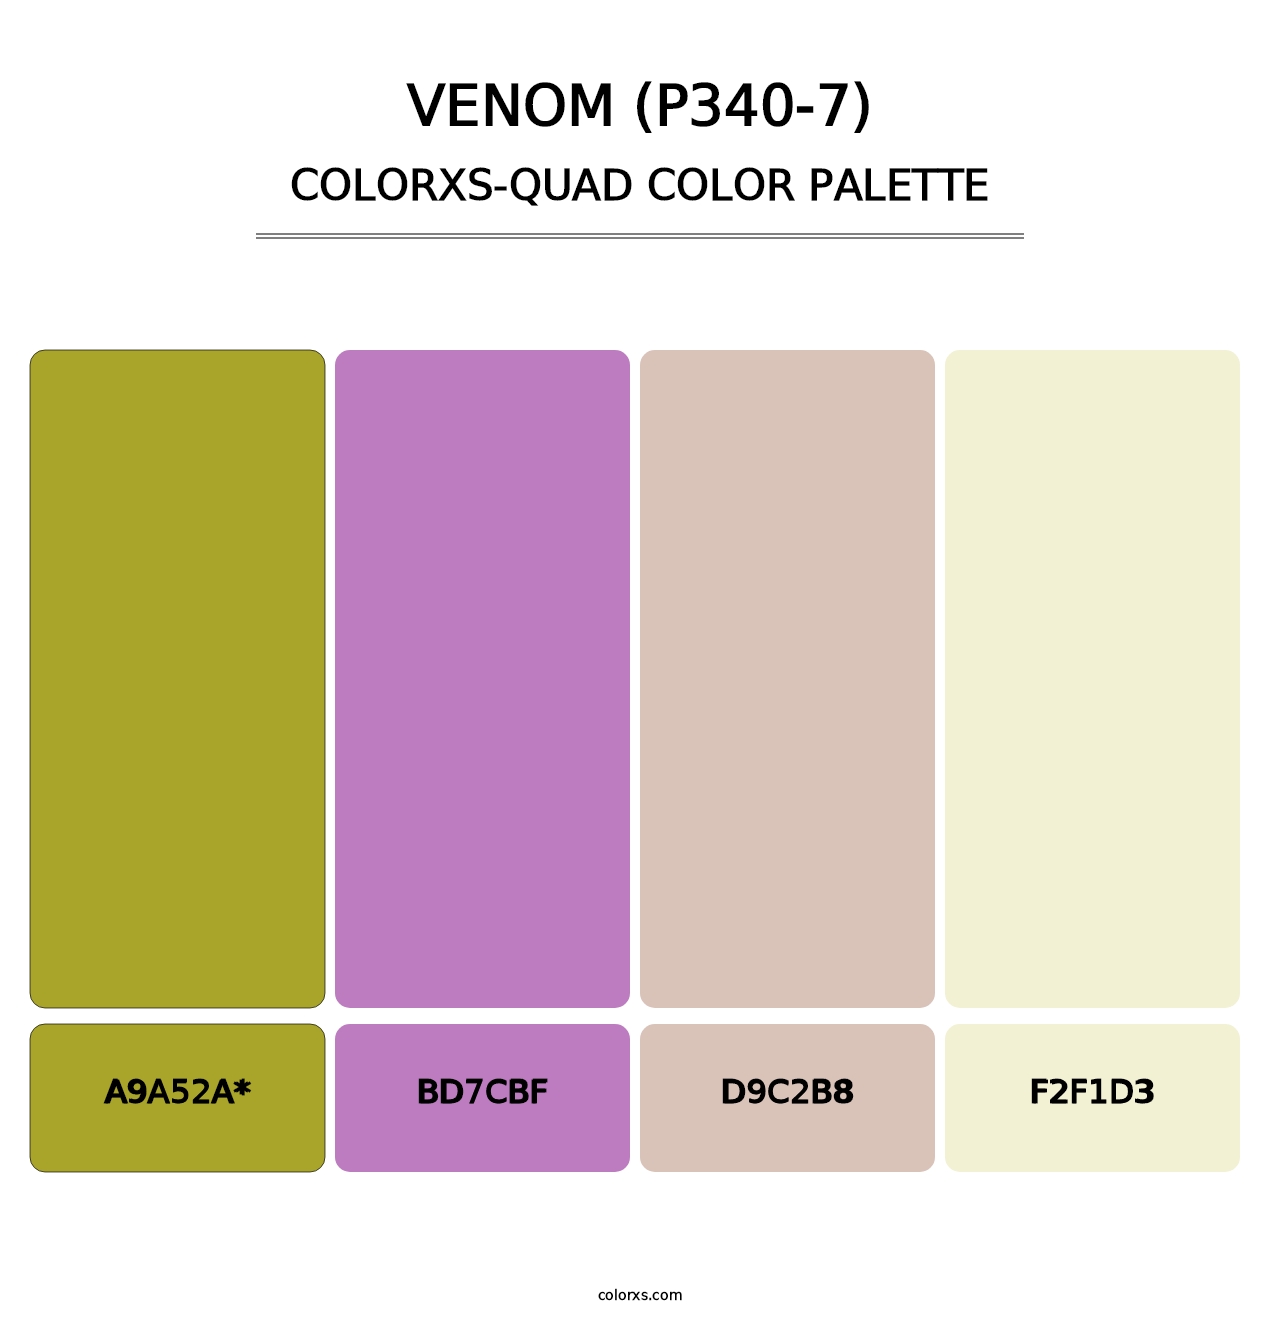 Venom (P340-7) - Colorxs Quad Palette